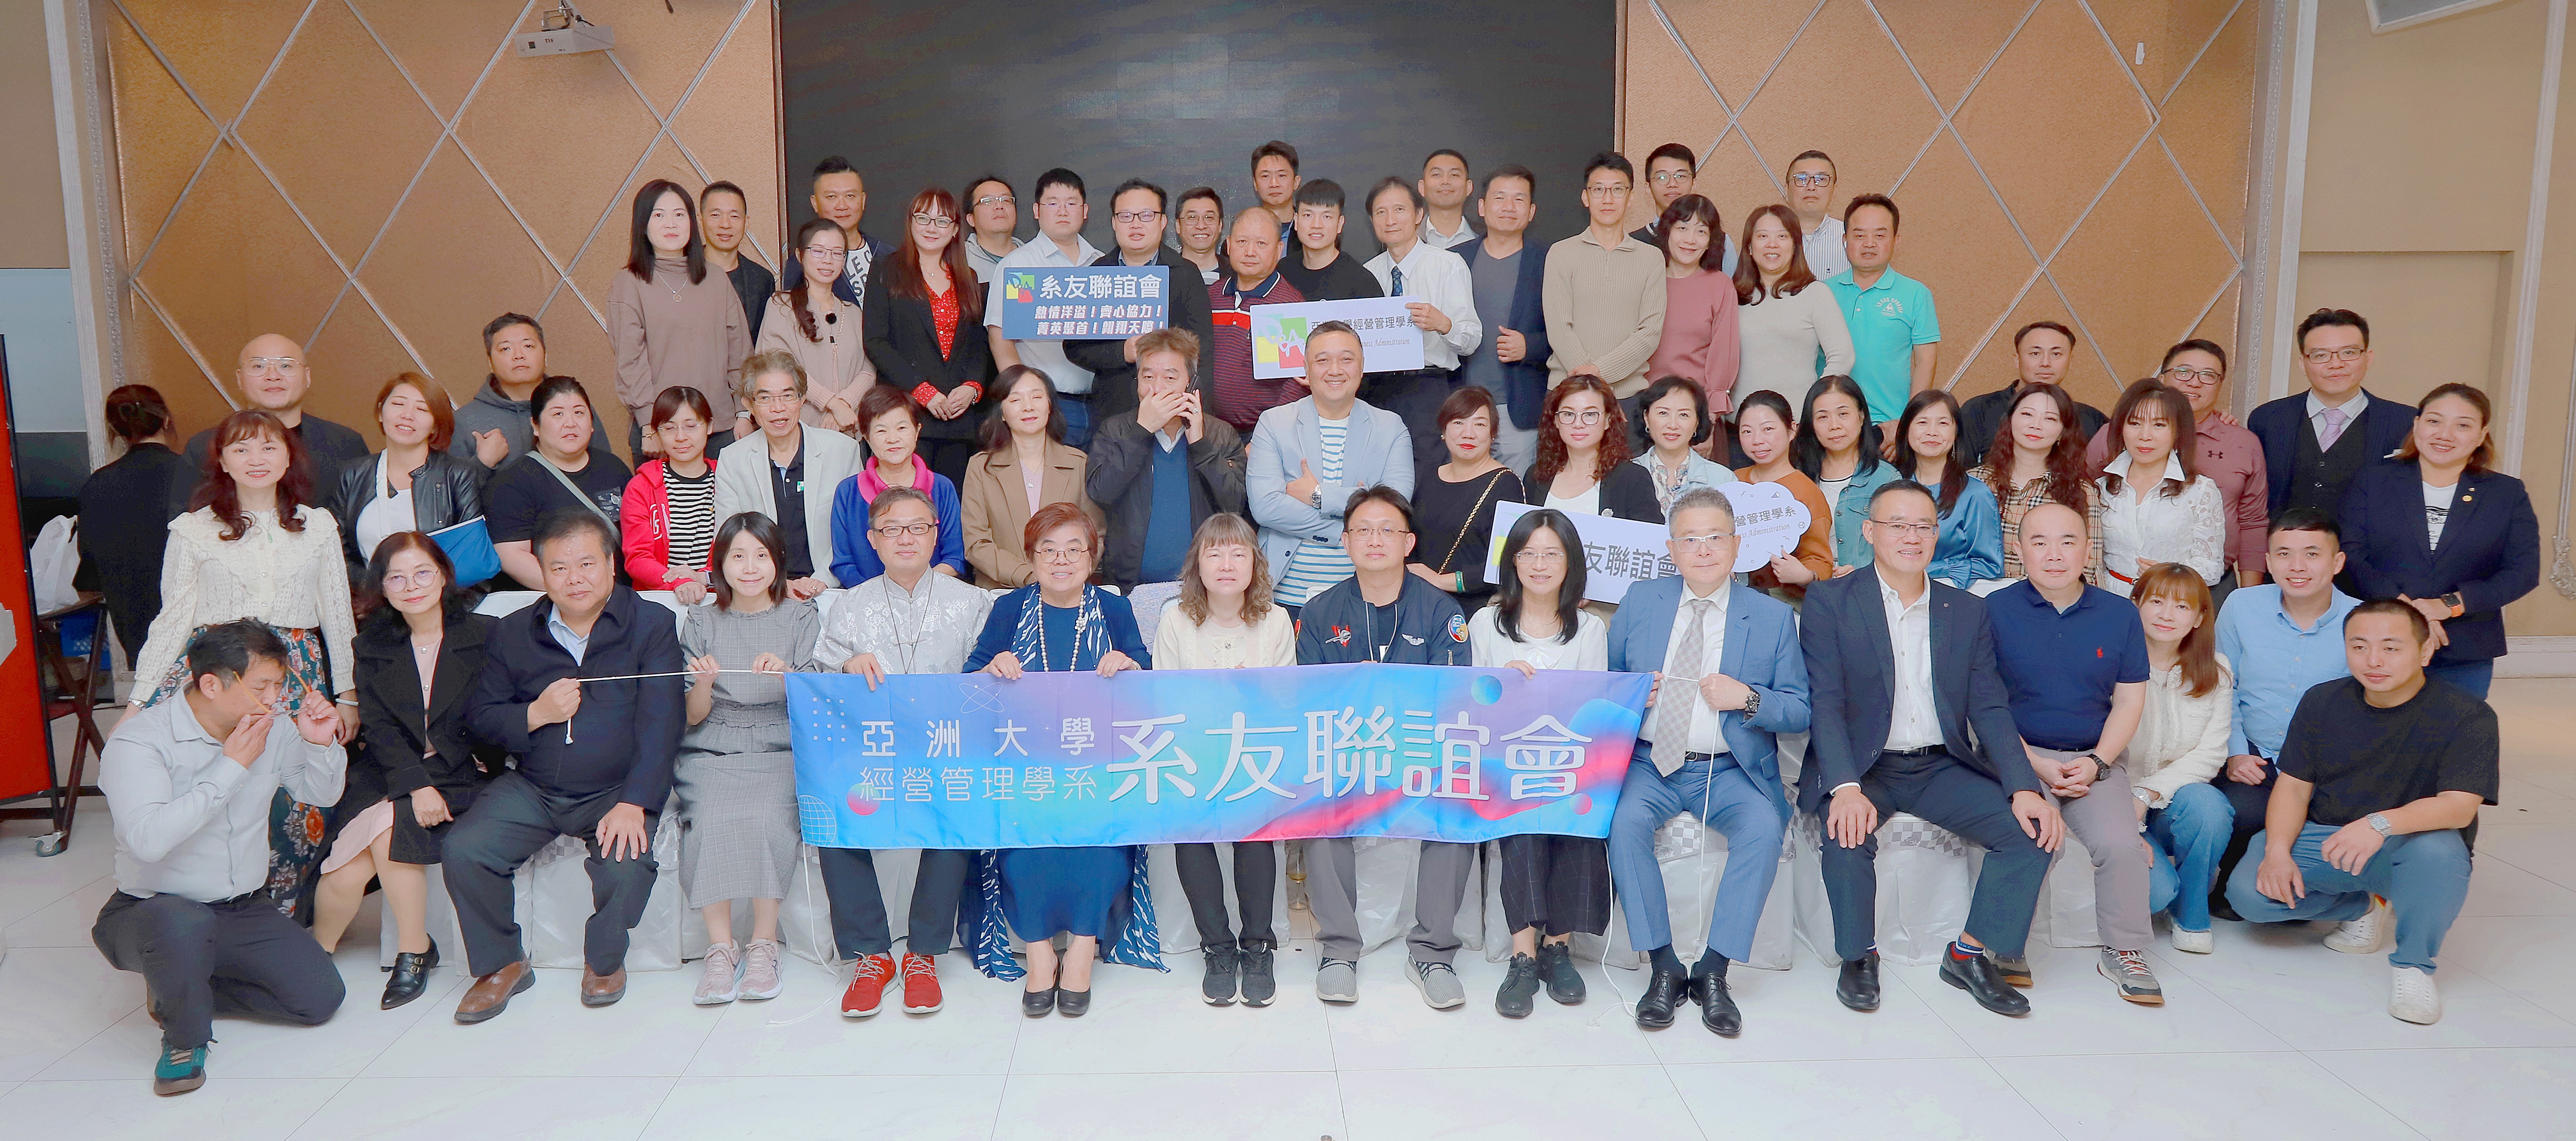 圖為亞大經管系主任莊淑惠(前排左7)，參加北部系友聯誼活動，與系友合影